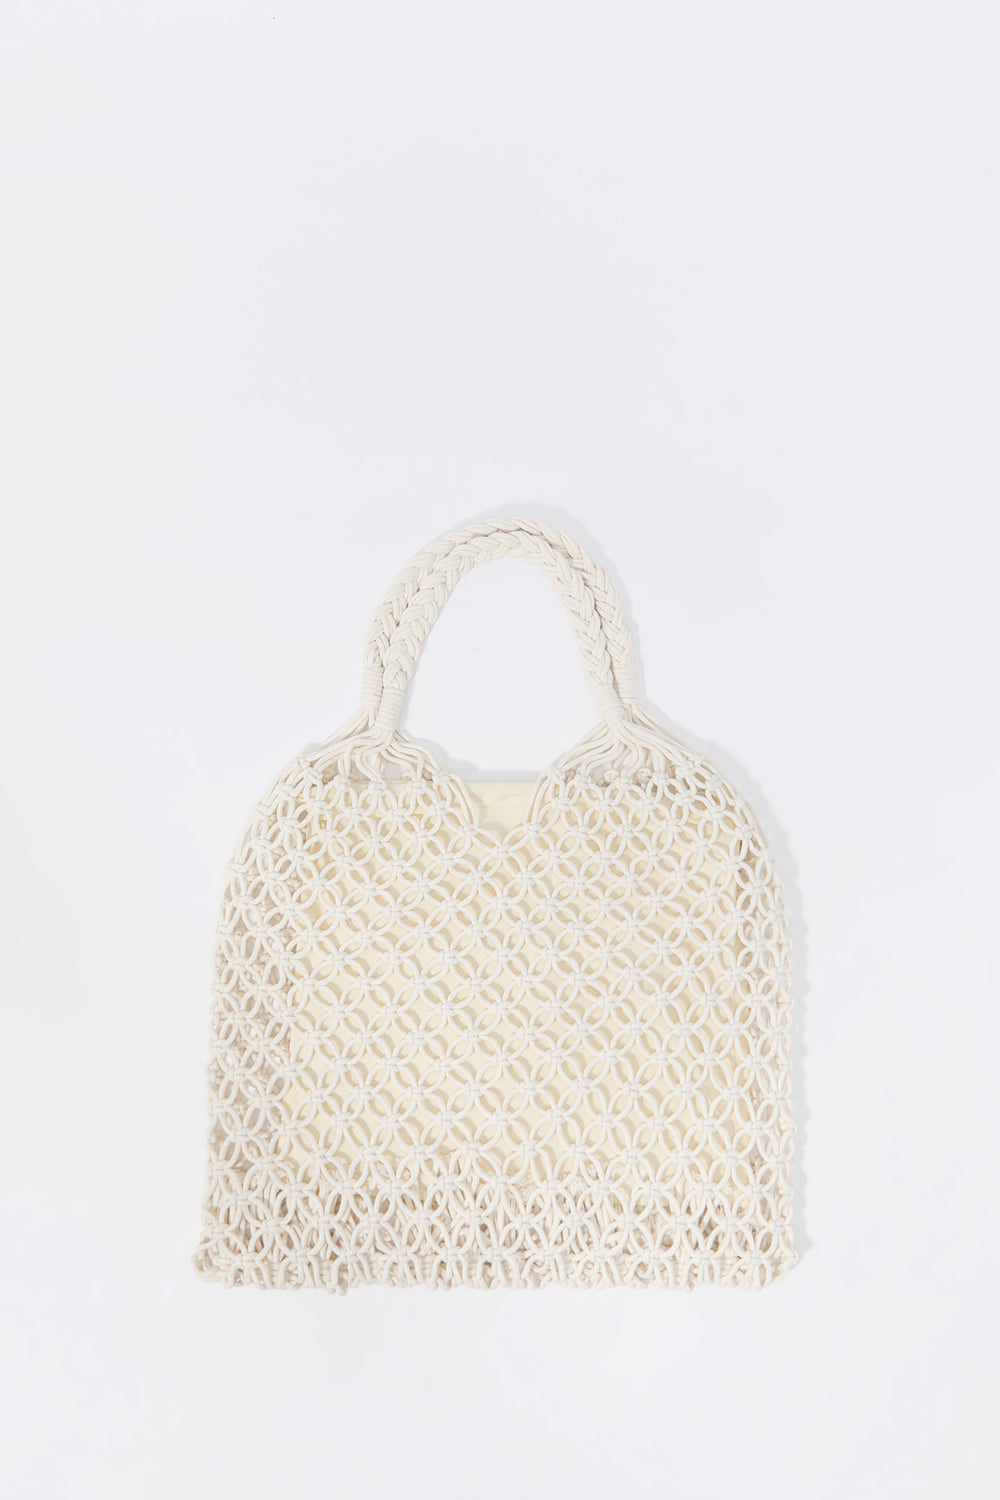 Crochet Handbag Crochet Handbag 6